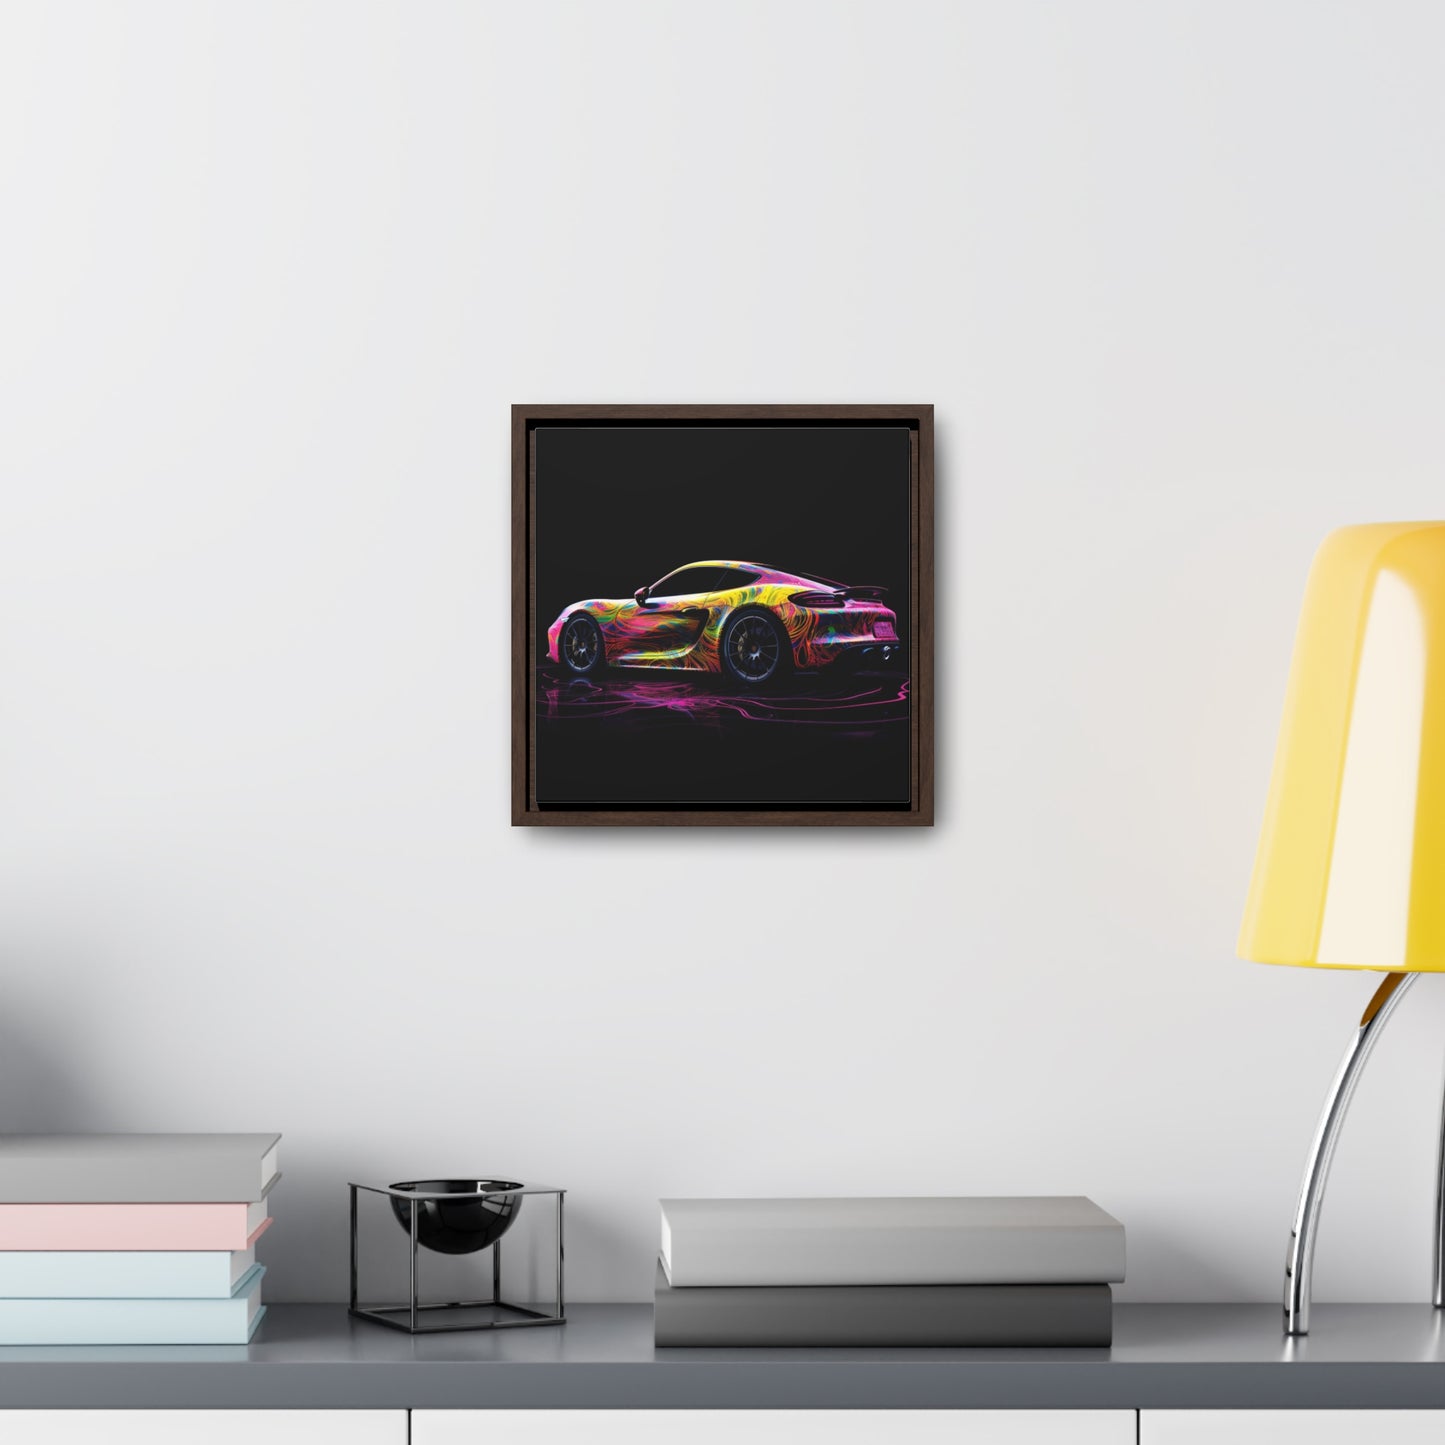 Gallery Canvas Wraps, Square Frame Porsche Flair 4